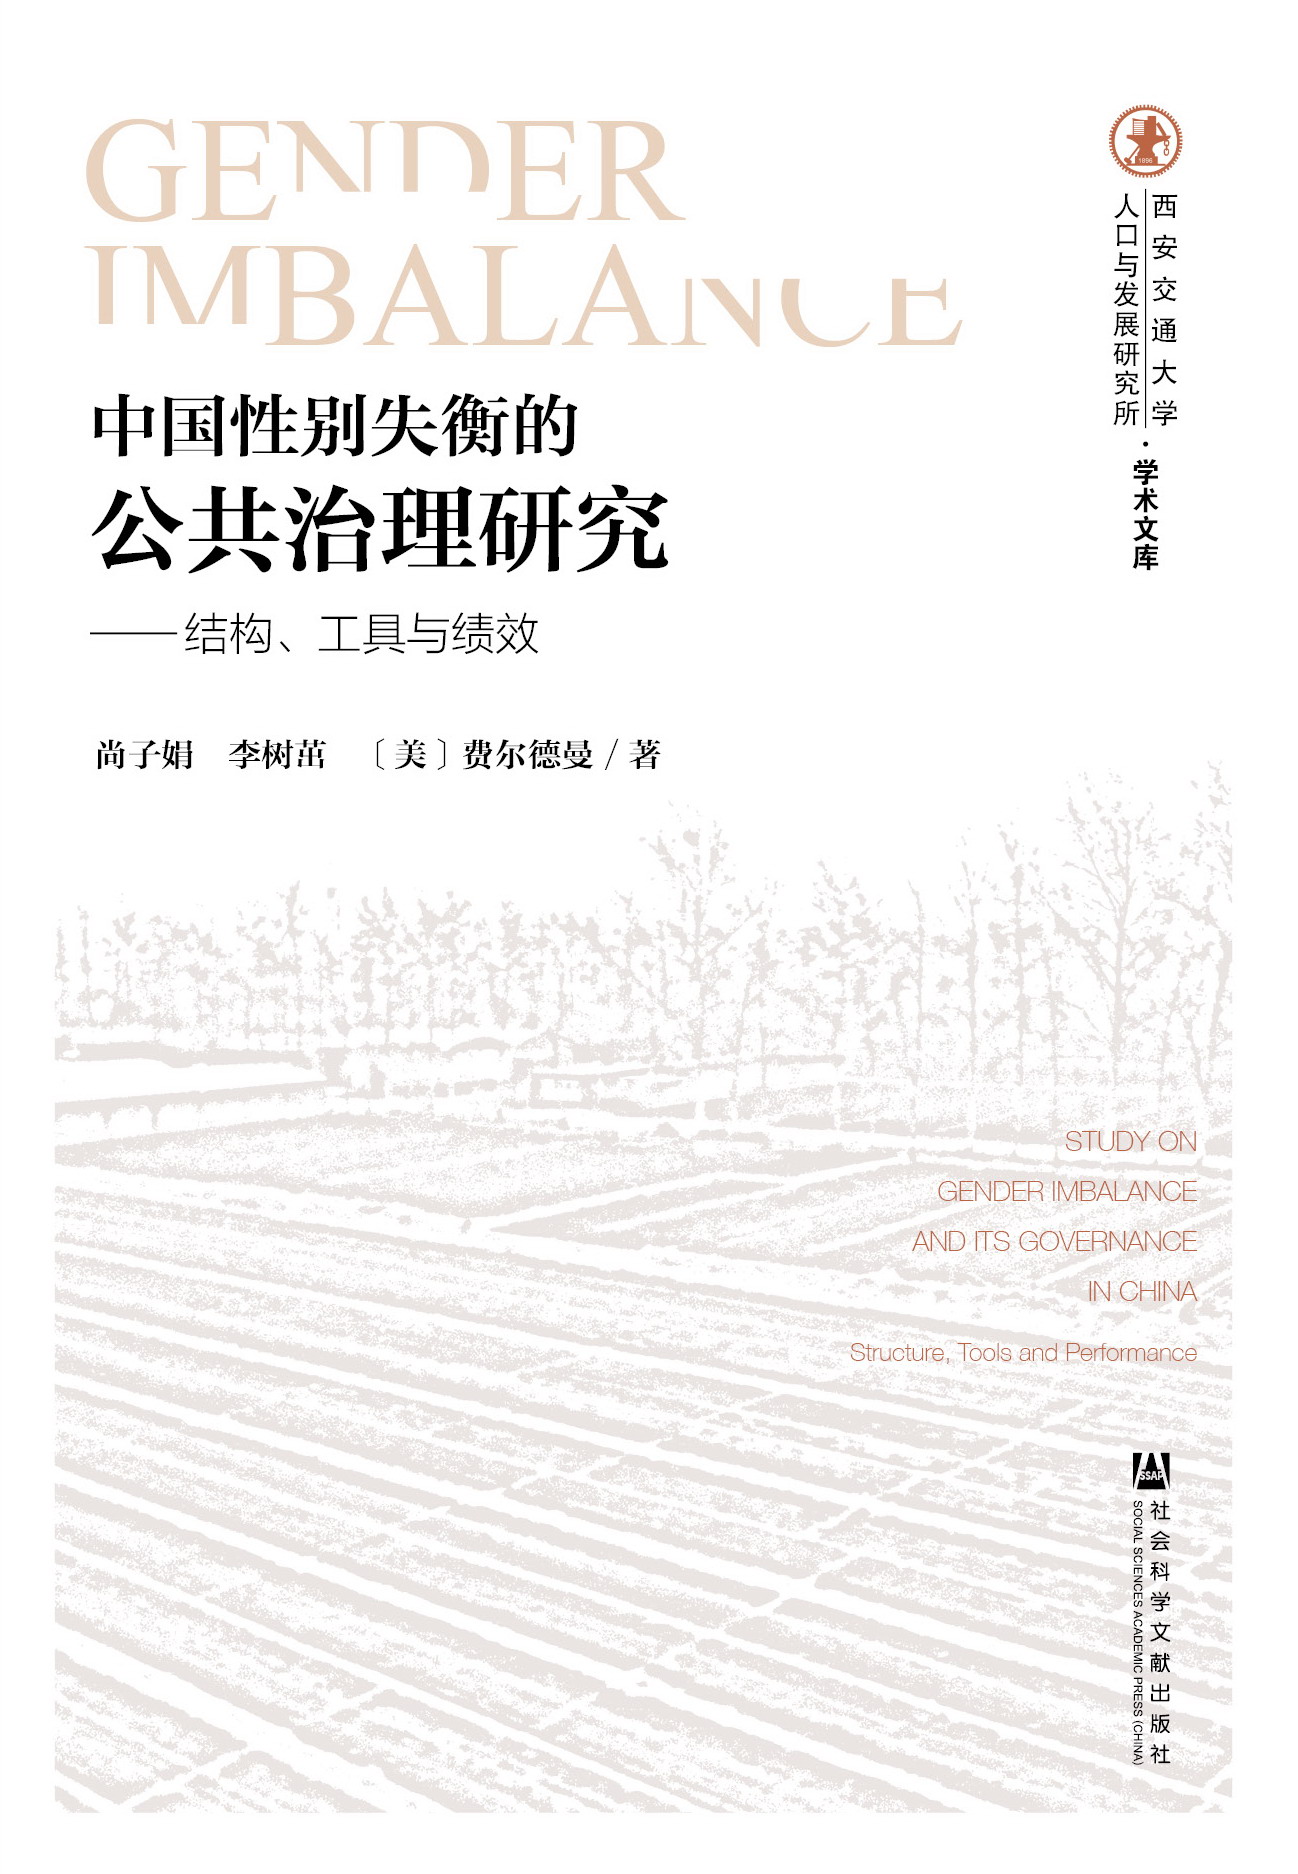 中国性别失衡的公共治理研究——结构、工具与绩效